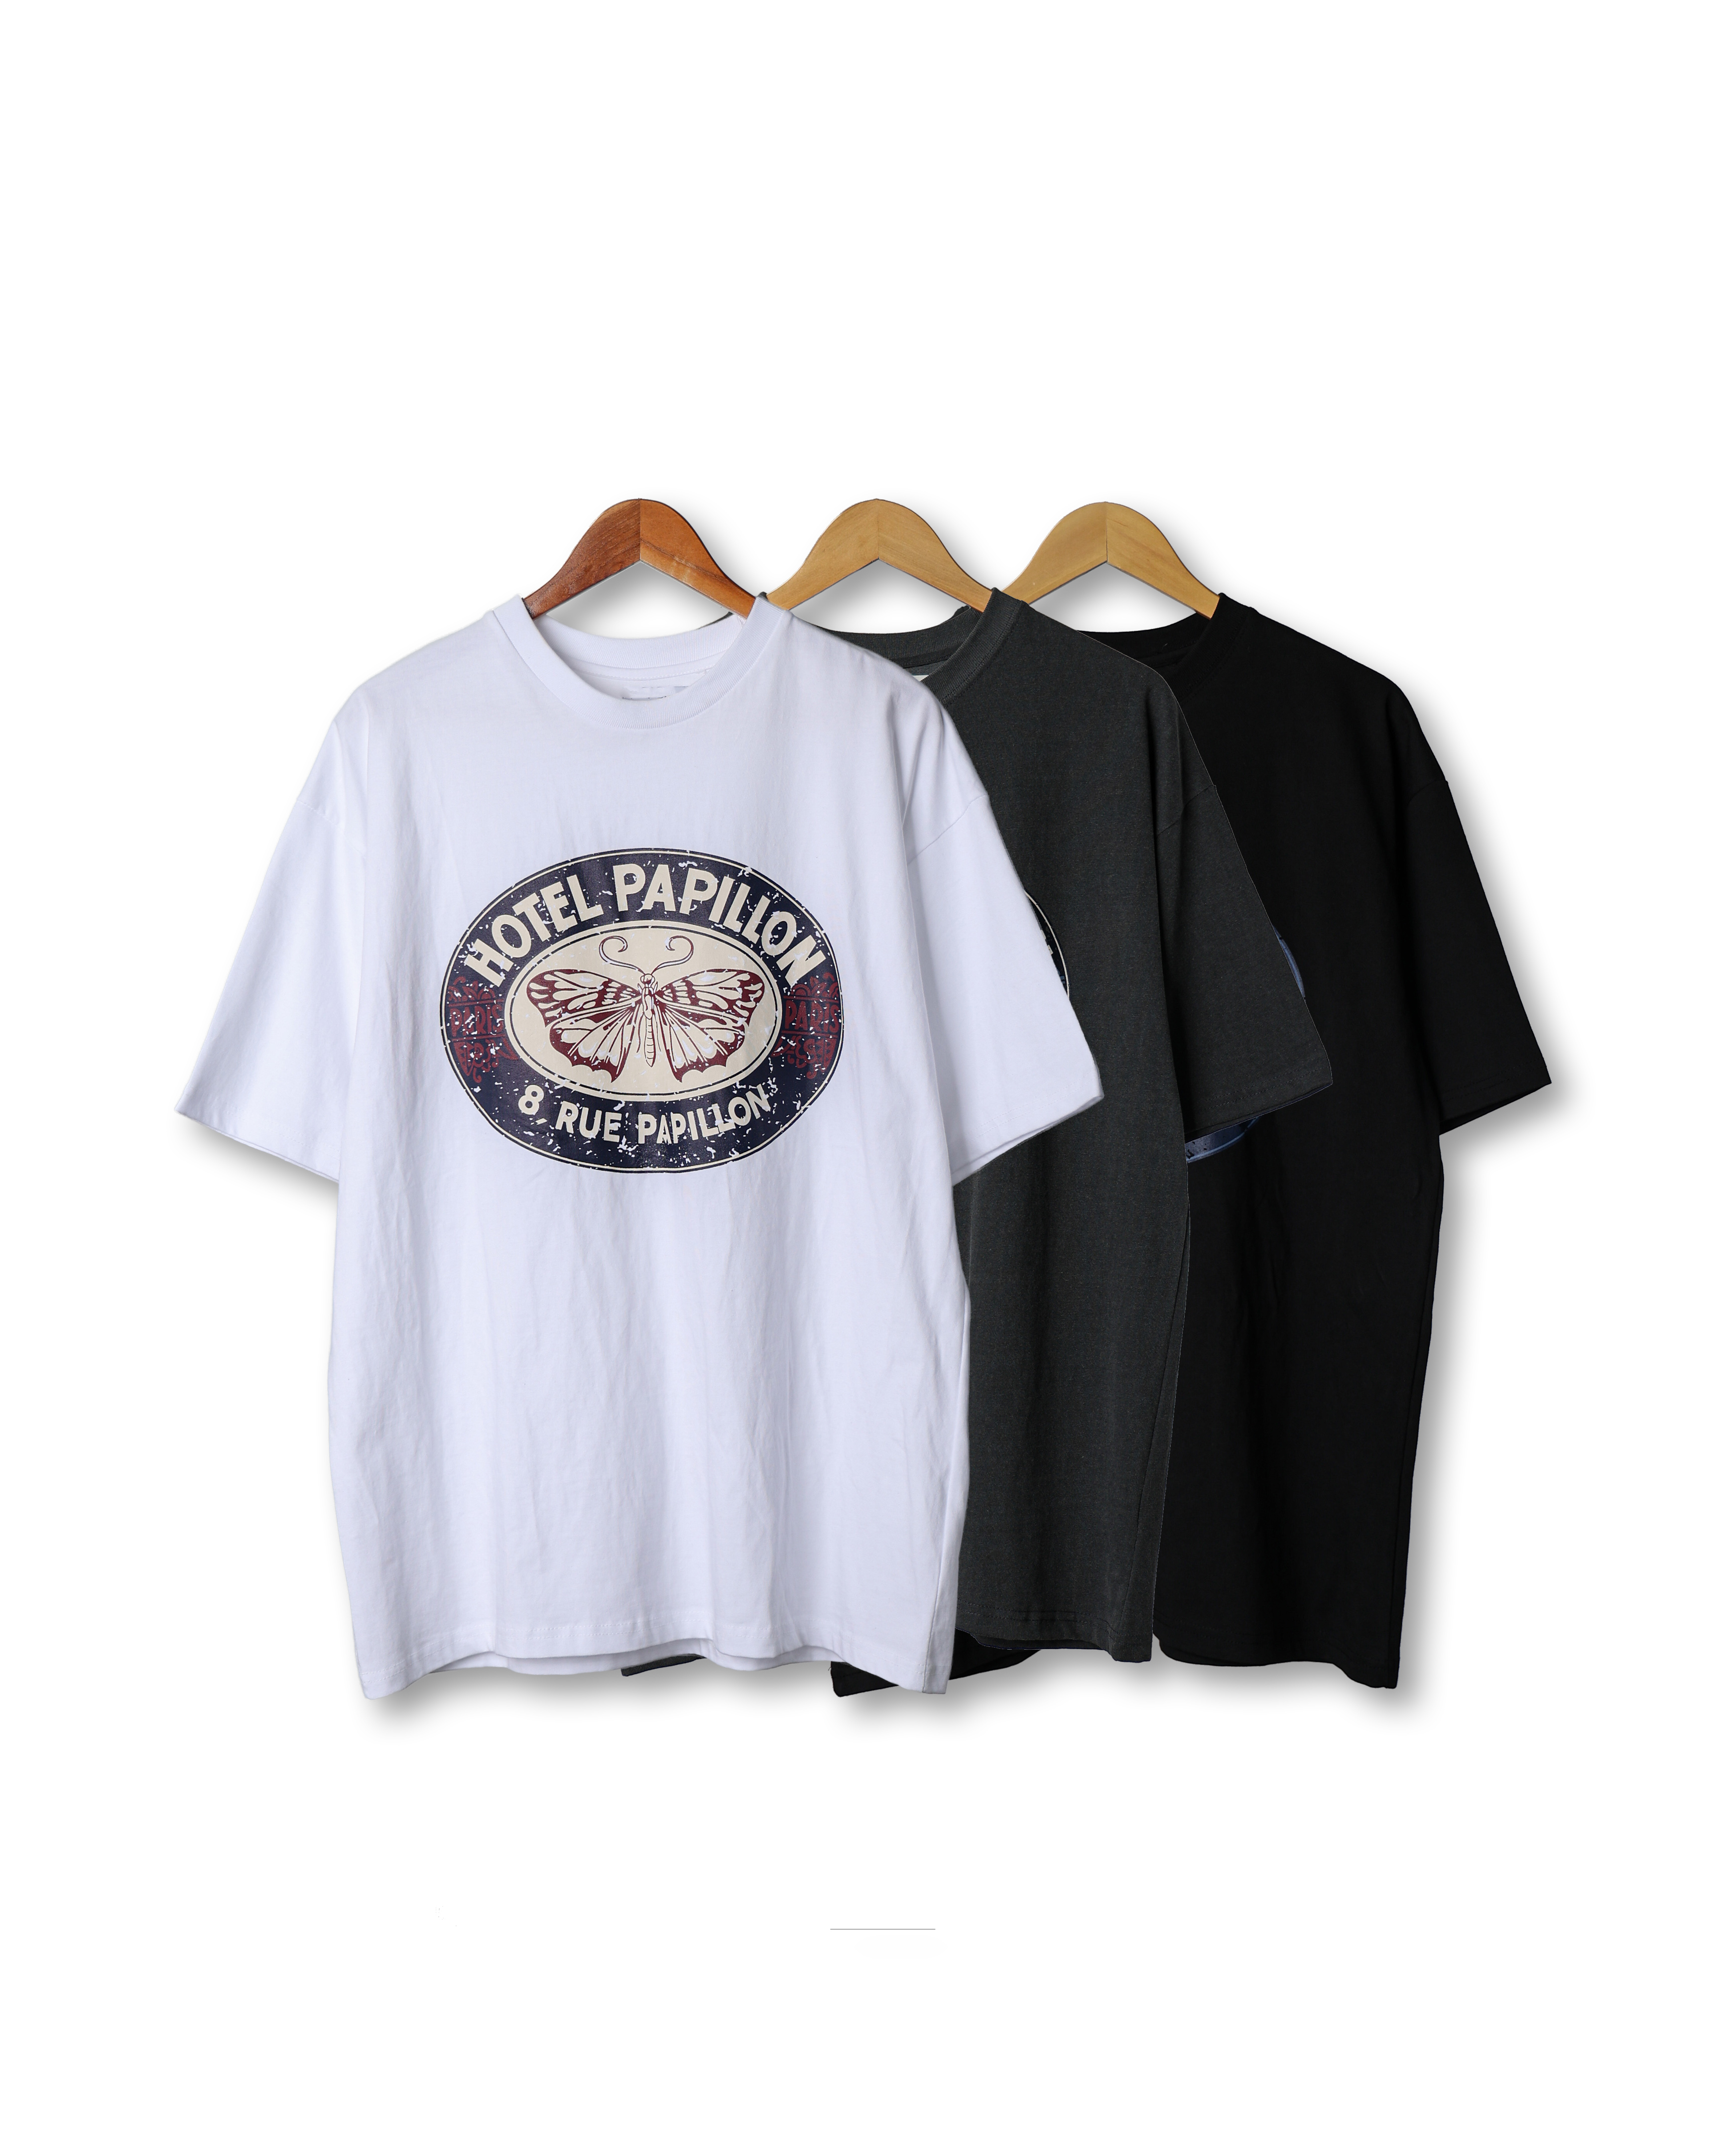 MONOP HOTEL PAPILLON Pigment T Shirts (Black/Charcoal/White)